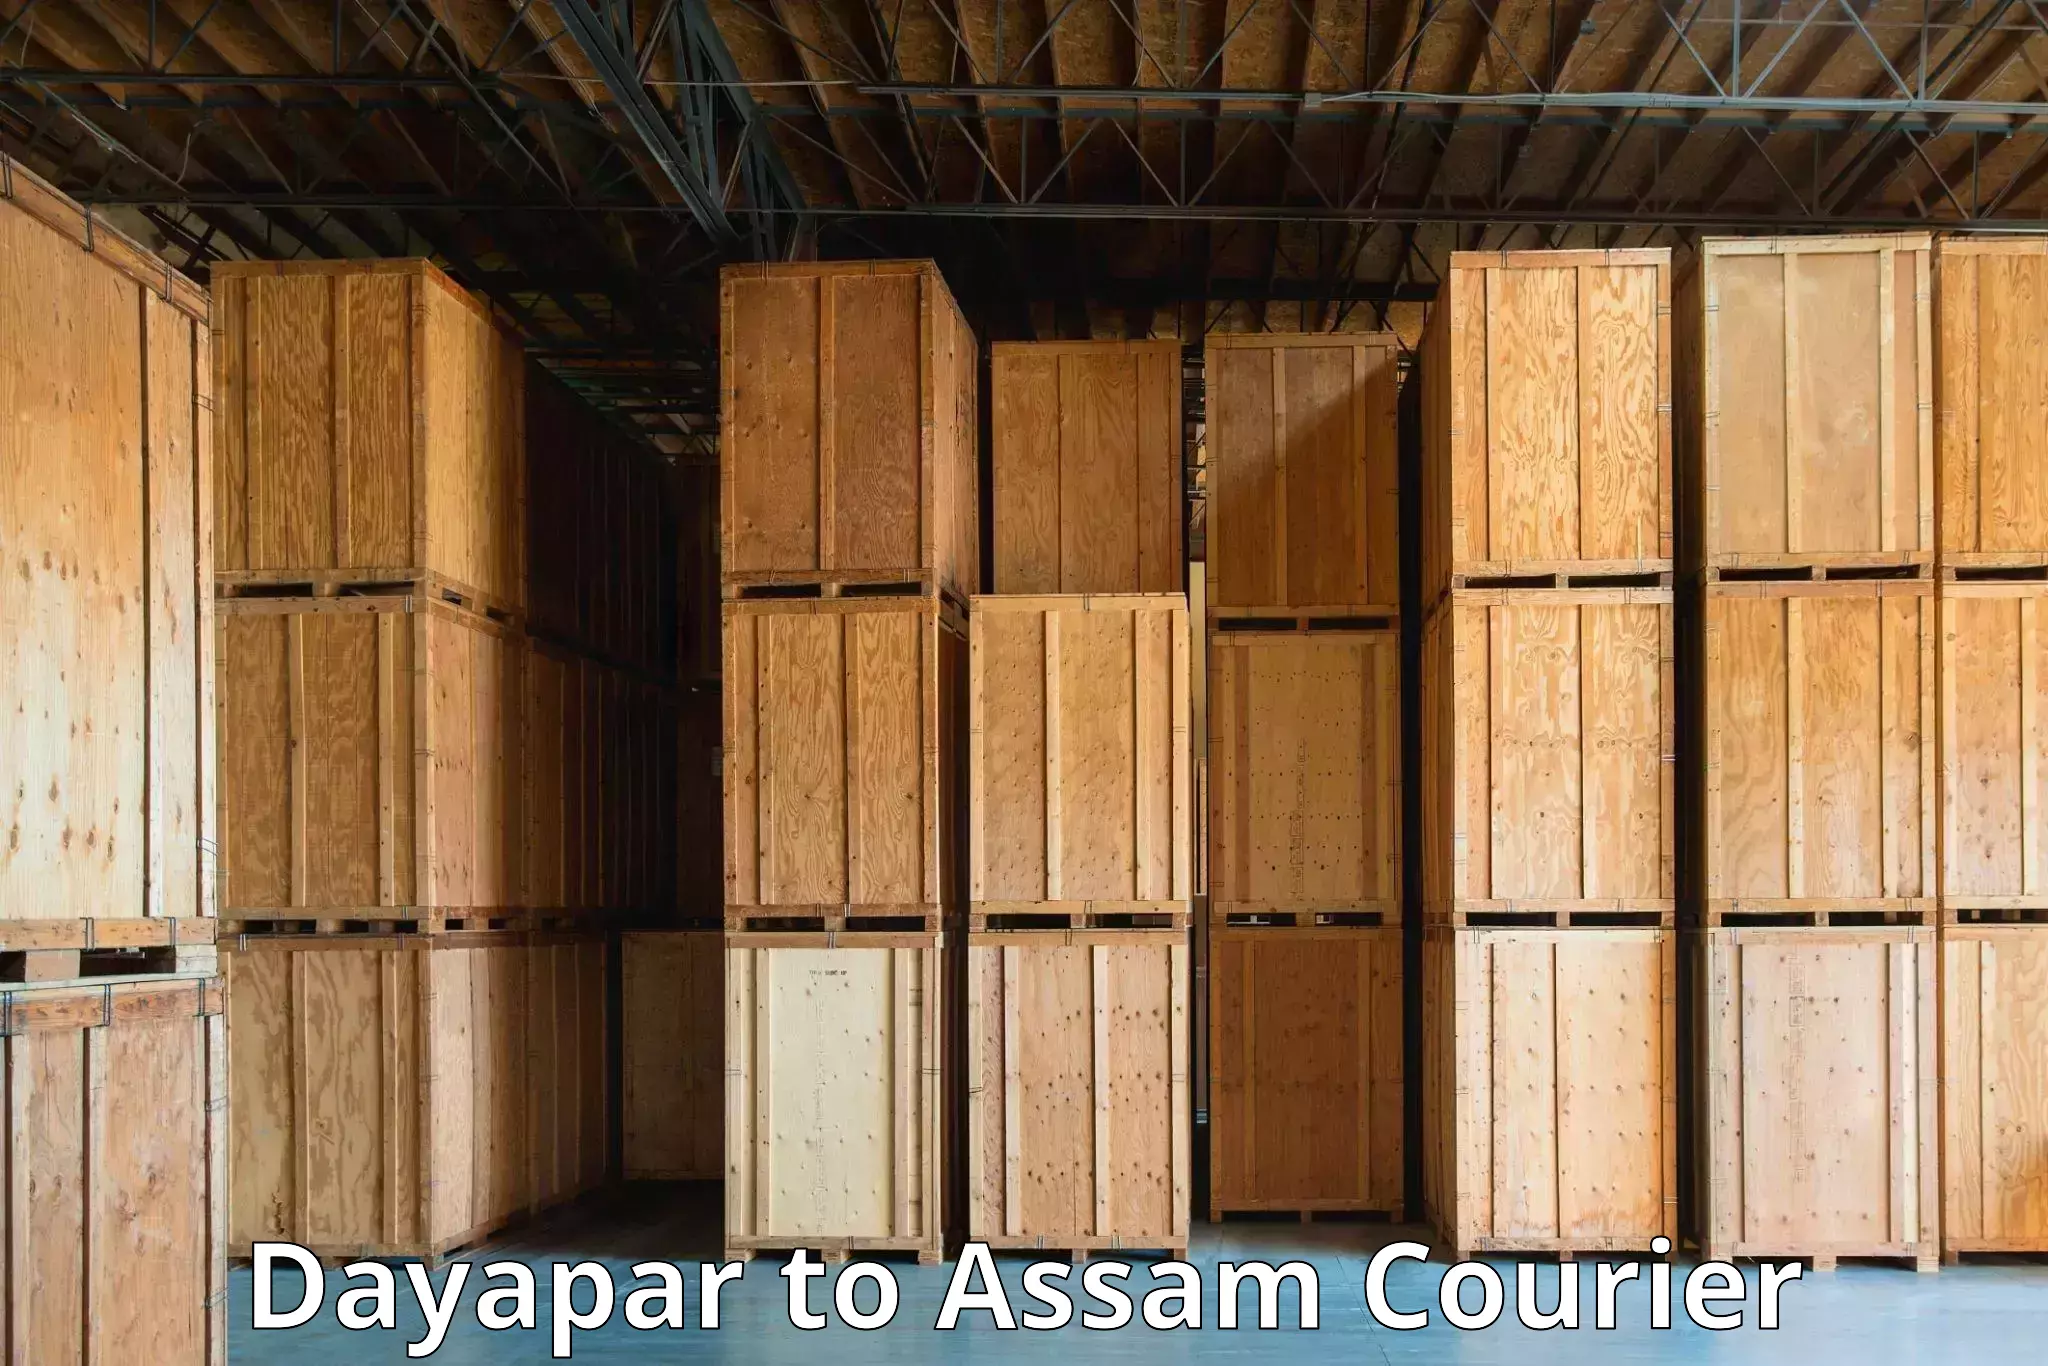 State-of-the-art courier technology Dayapar to Assam